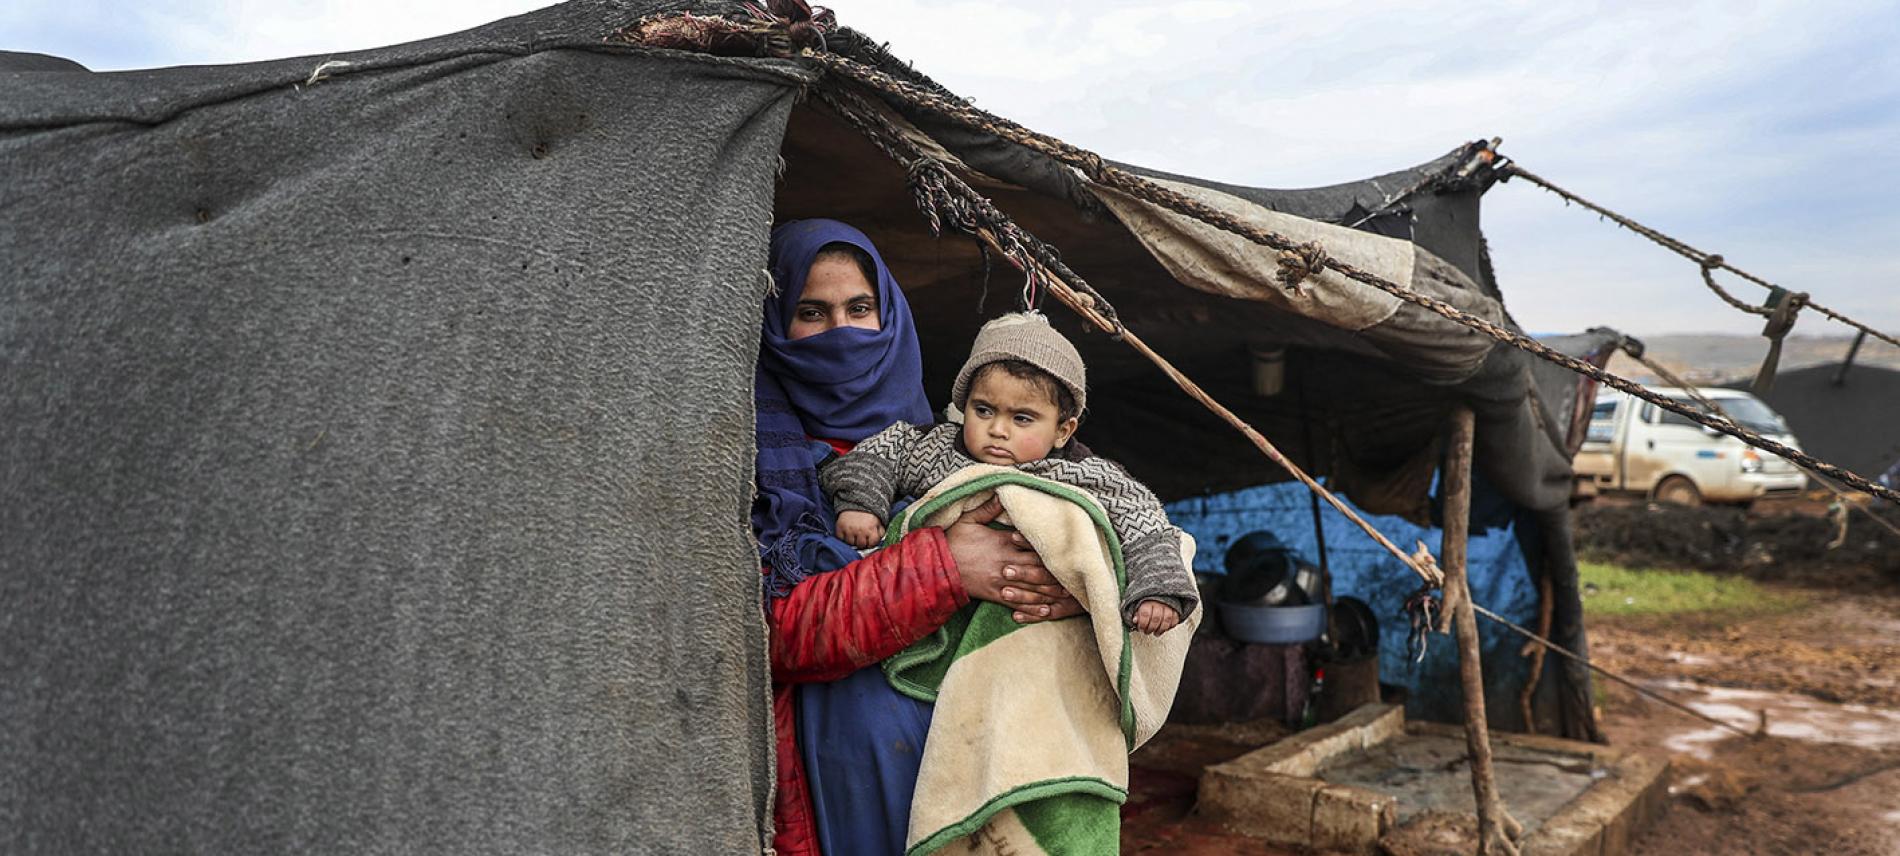 Trotz der eisigen Kälte müssen die geflüchteten Menschen in Syrien in provisorischen Zelten leben. Foto: Esra Hacioglu_Anadolu Agency via AFP